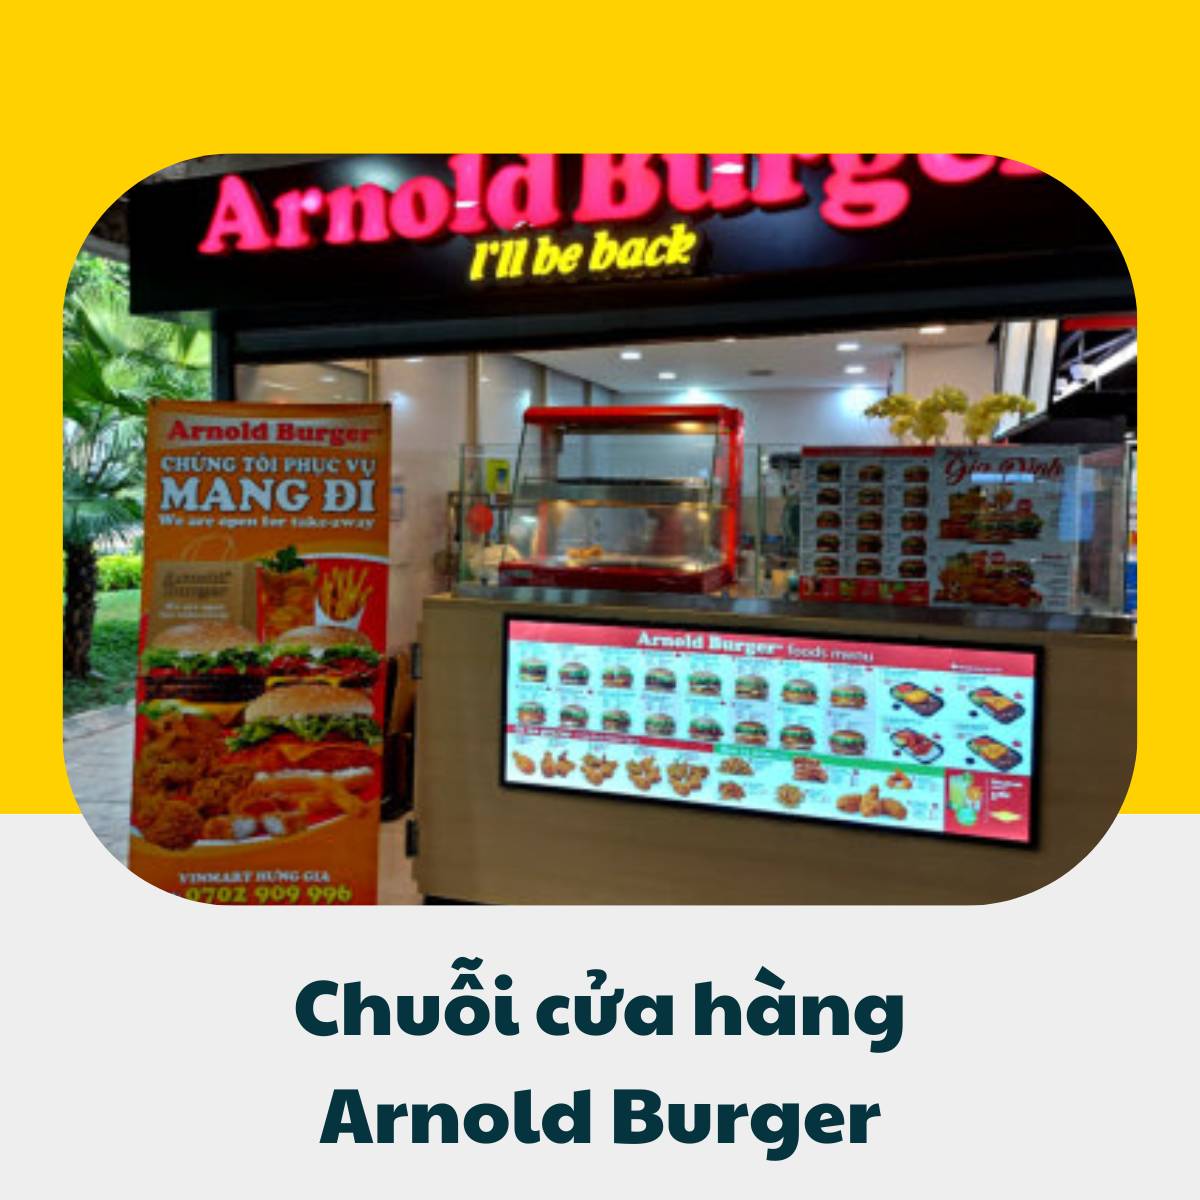 Chuỗi cửa hàng Arnold Burger